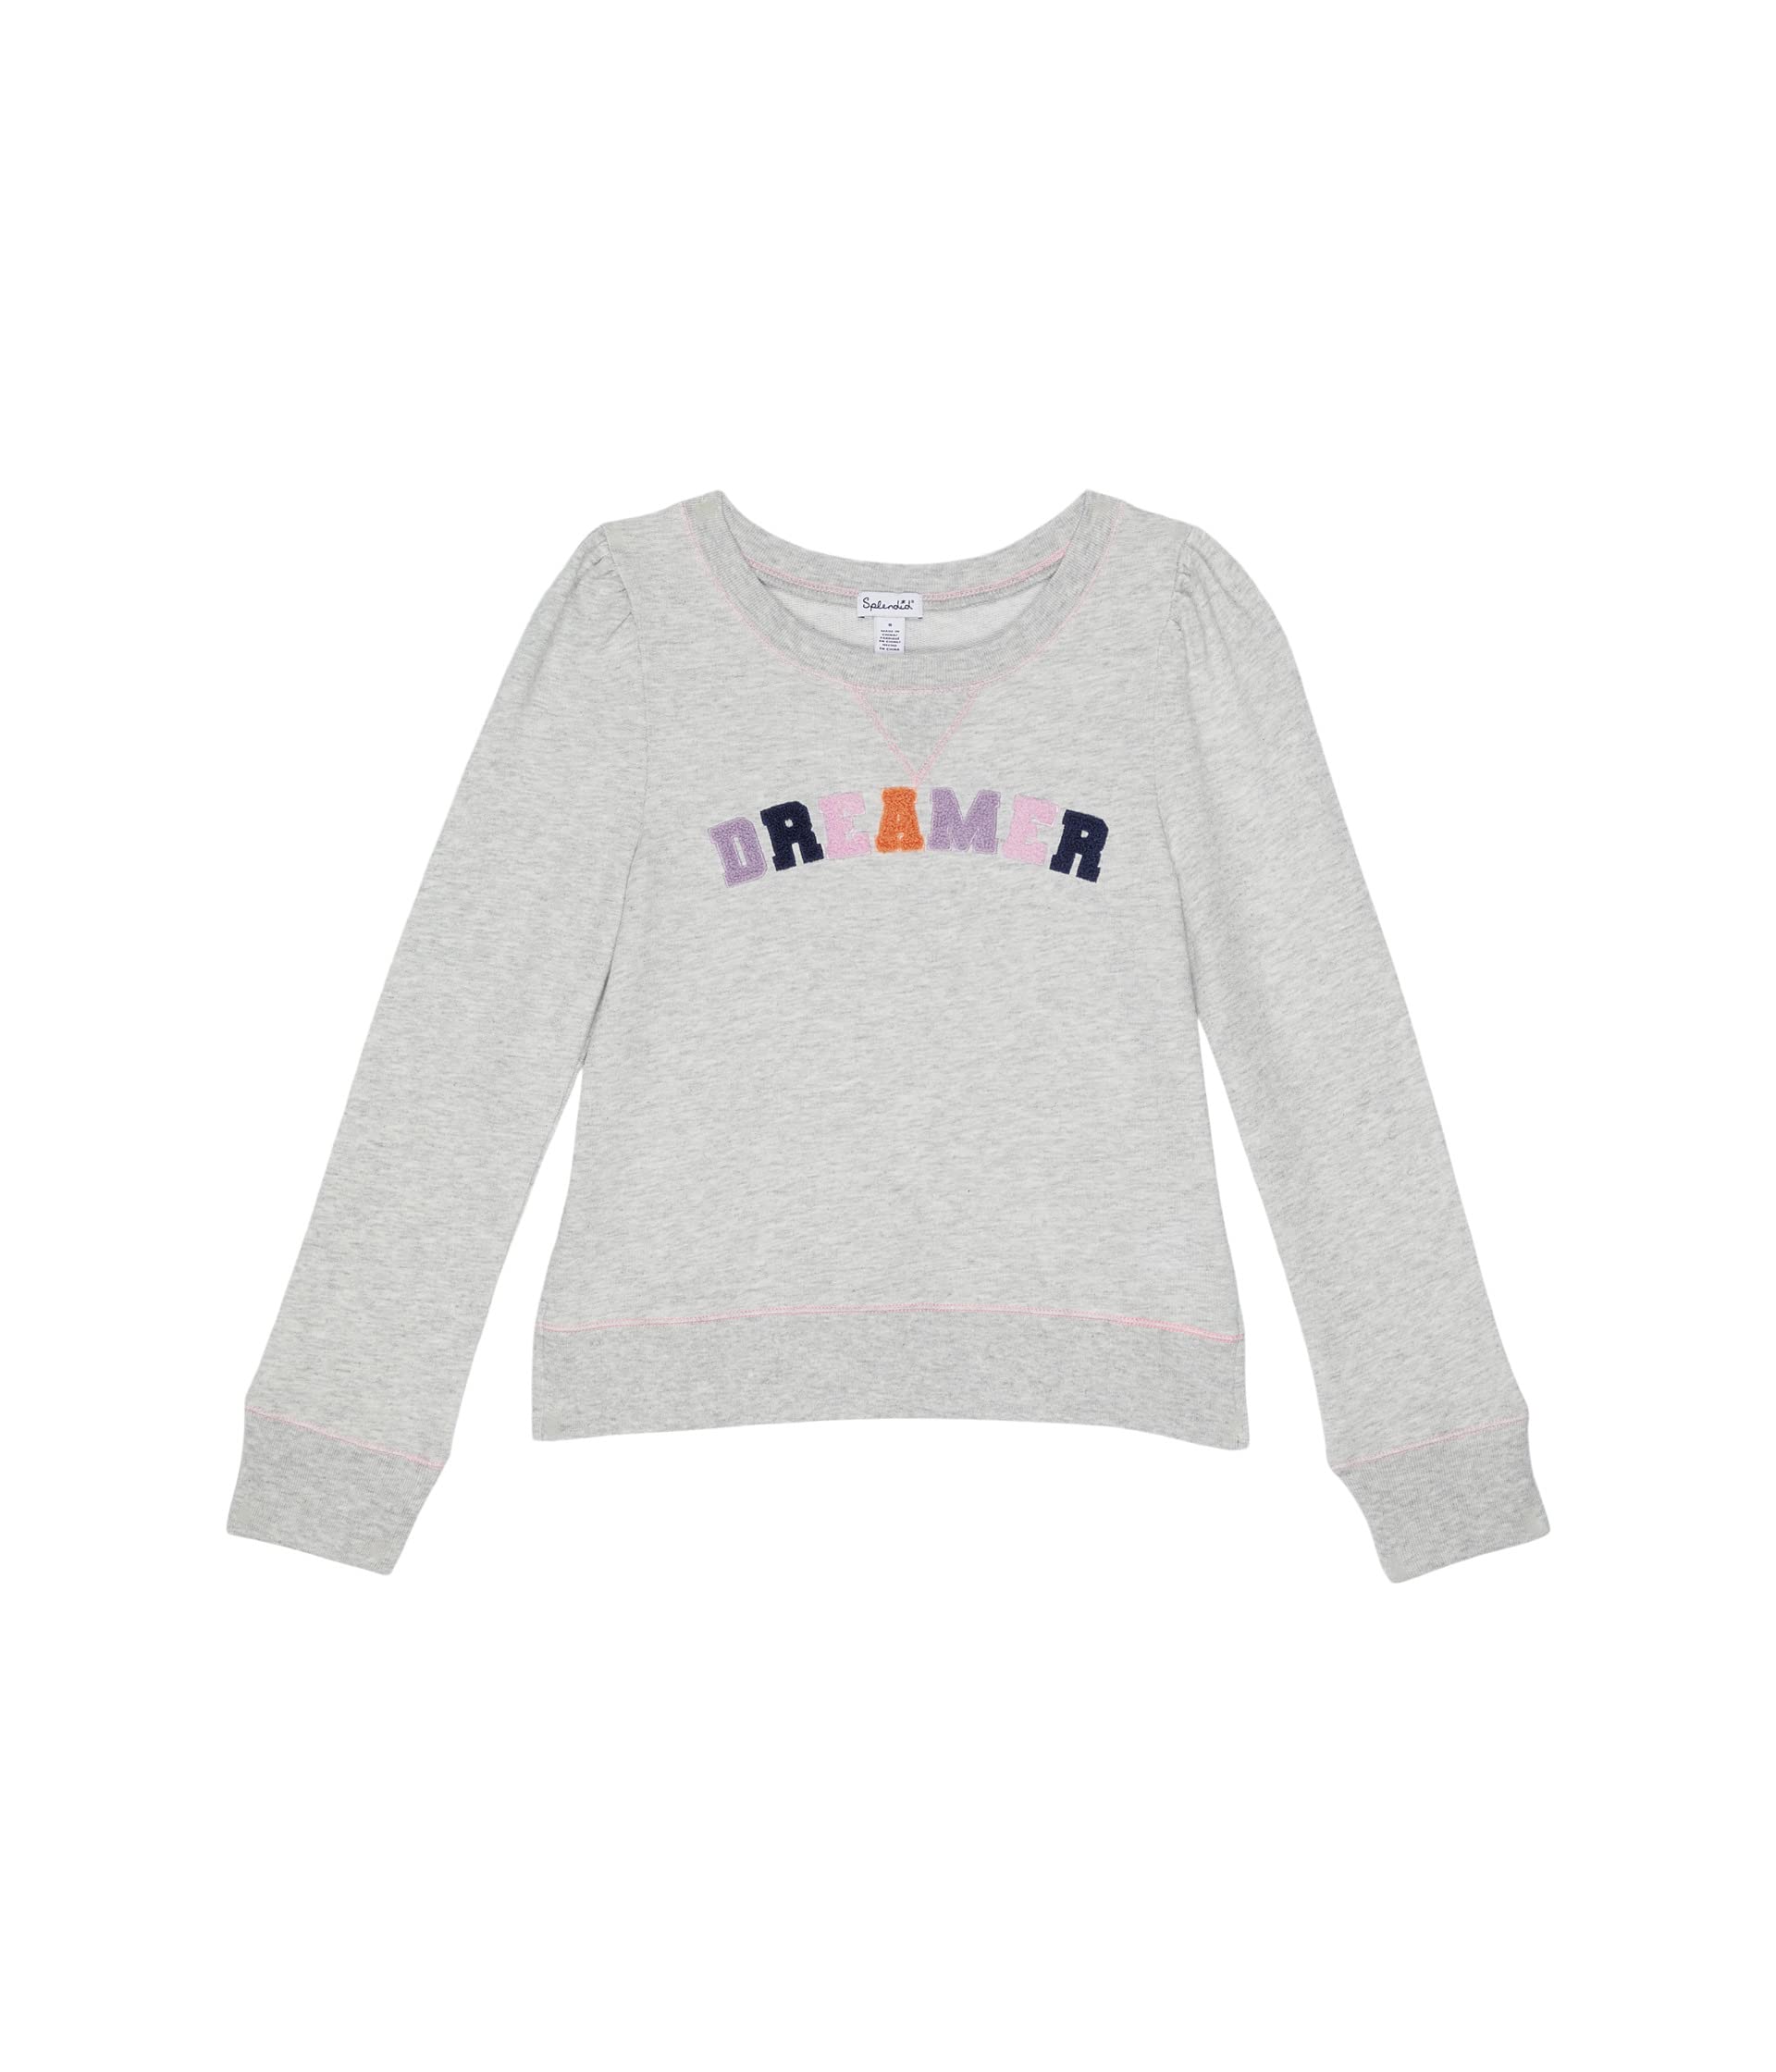 Пуловер Splendid Littles, Dreamer Sweatshirt пуловер splendid littles dreamer sweatshirt